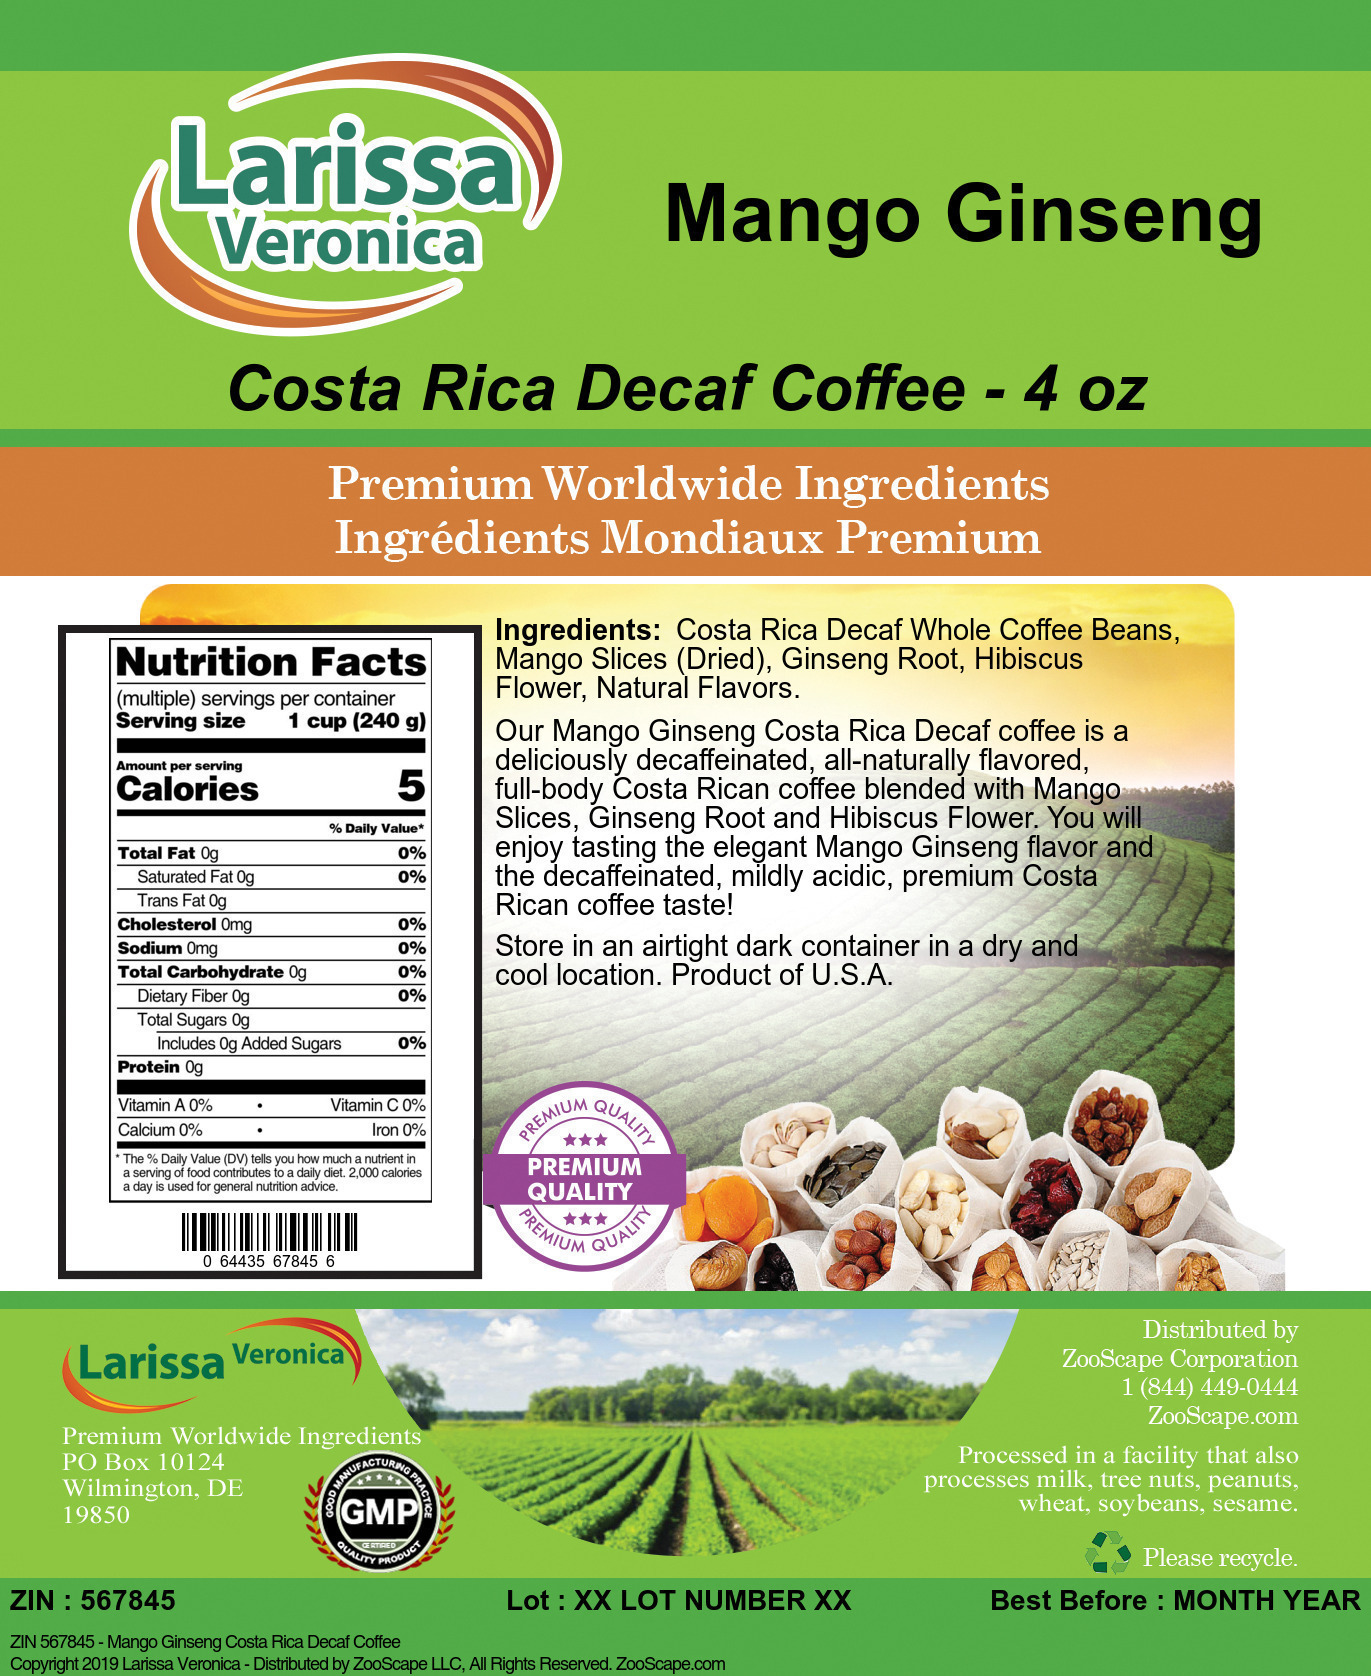 Mango Ginseng Costa Rica Decaf Coffee - Label